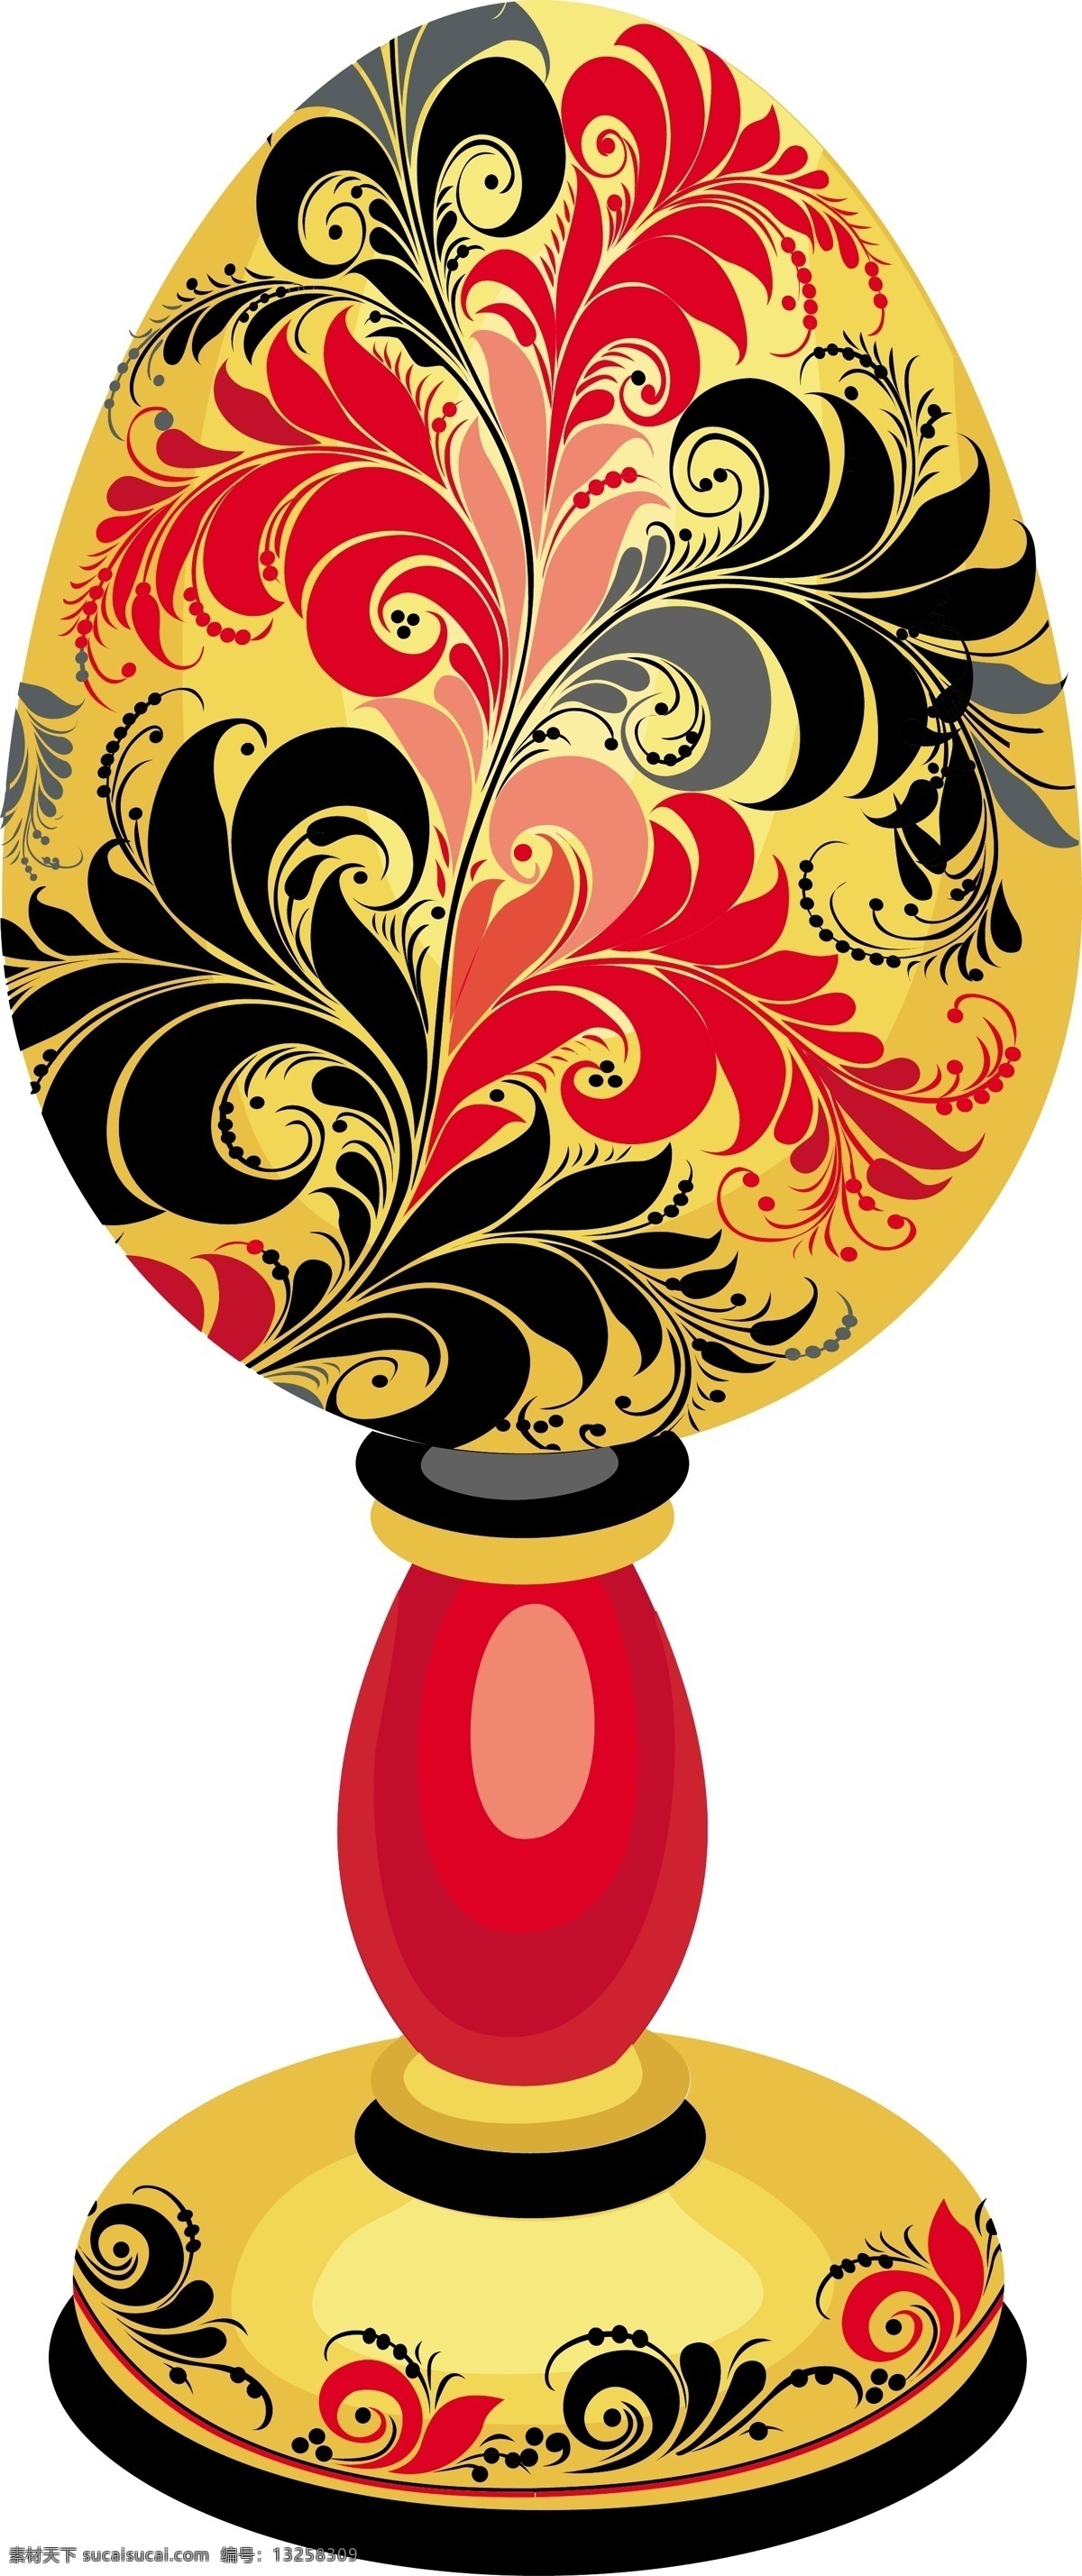 古典 花纹 器皿 ai格式 古玩 花边 模板 设计稿 矢量素材 中国风 叶子 装饰 素材元素 源文件 矢量图